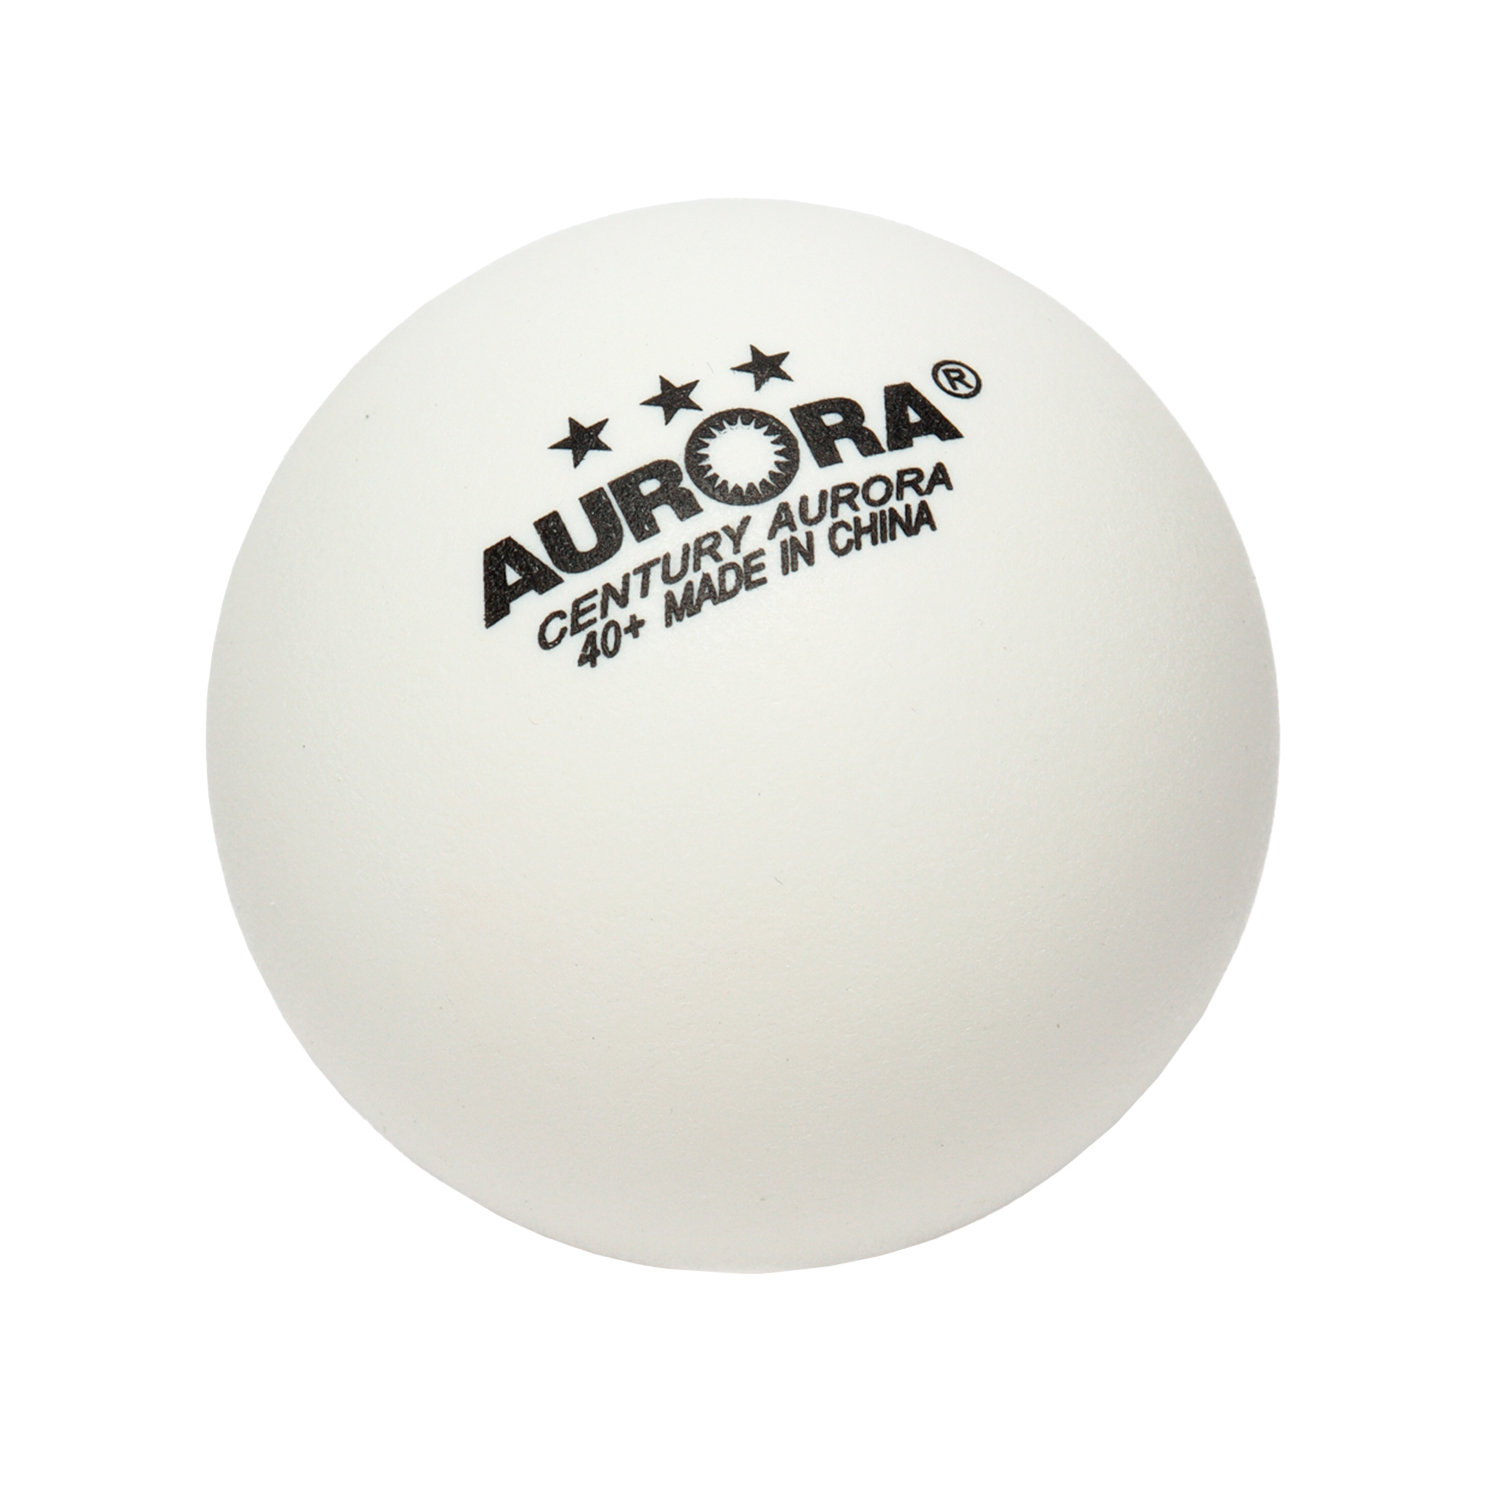 Мячи для настольного тенниса "Aurora"